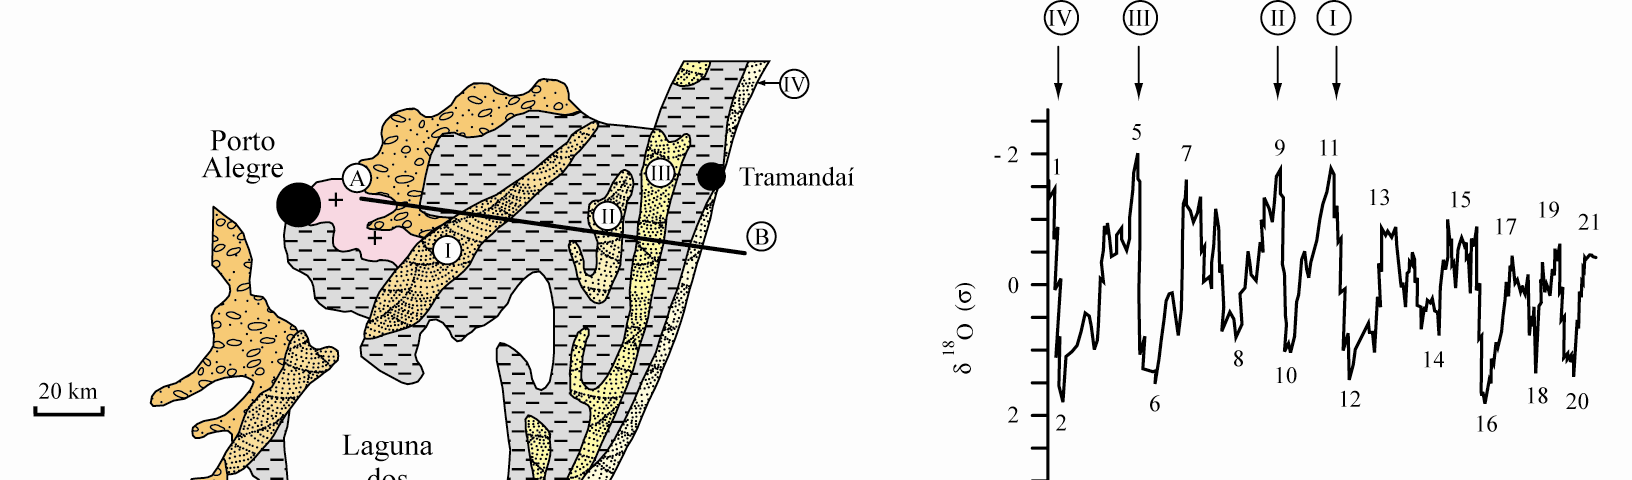 128 Cronoestratigrafia da Bacia de Pelotas: uma revisão das seqüências deposicionais Villwock et al. (1986) agruparam os depósitos sedimentares da planície costeira em sistemas deposicionais.